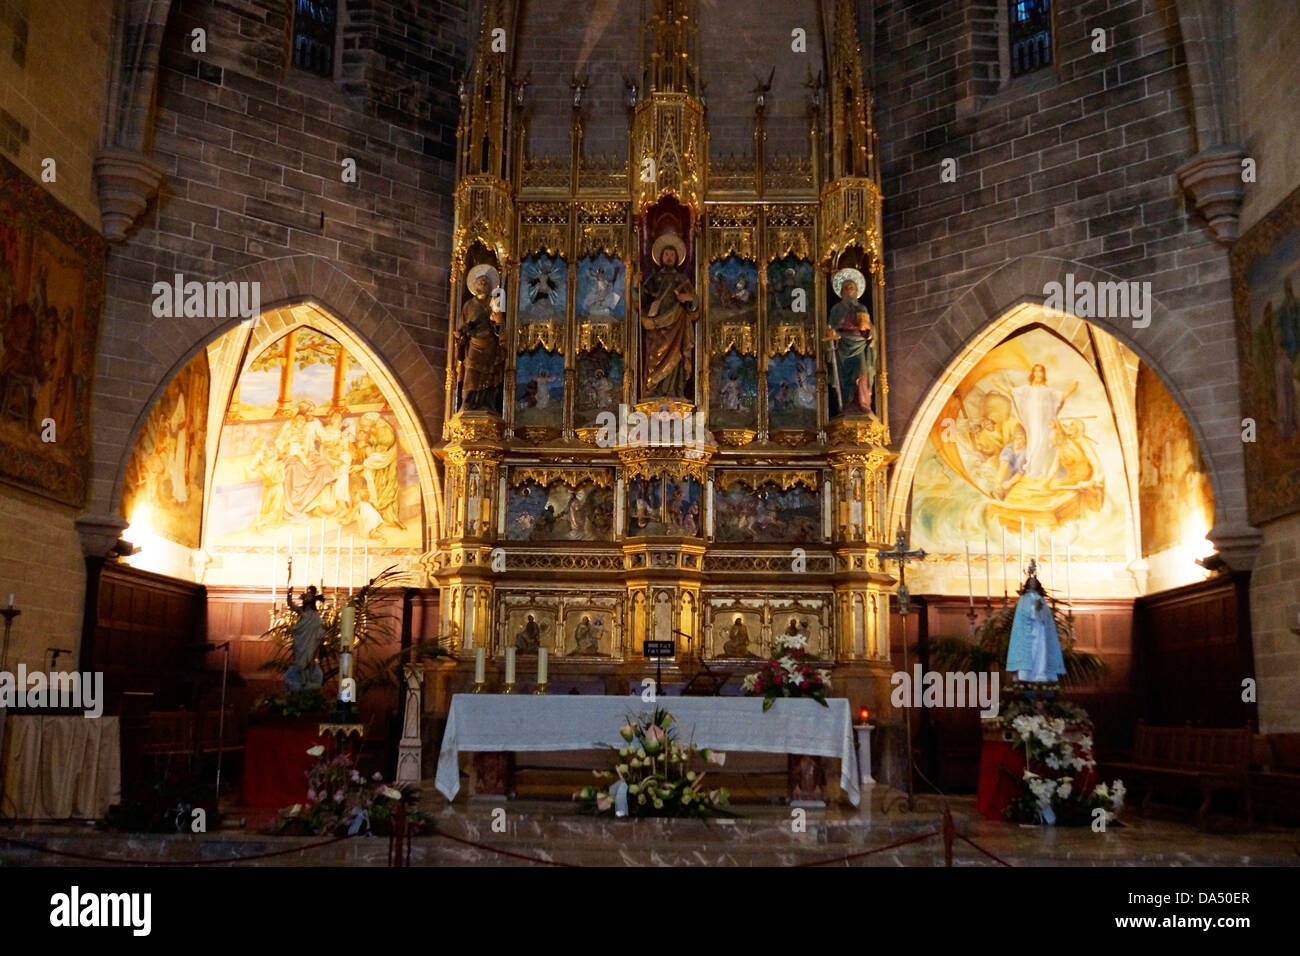 esglesia de sant jaume, alcudia, mallorca, spain Stock Photo